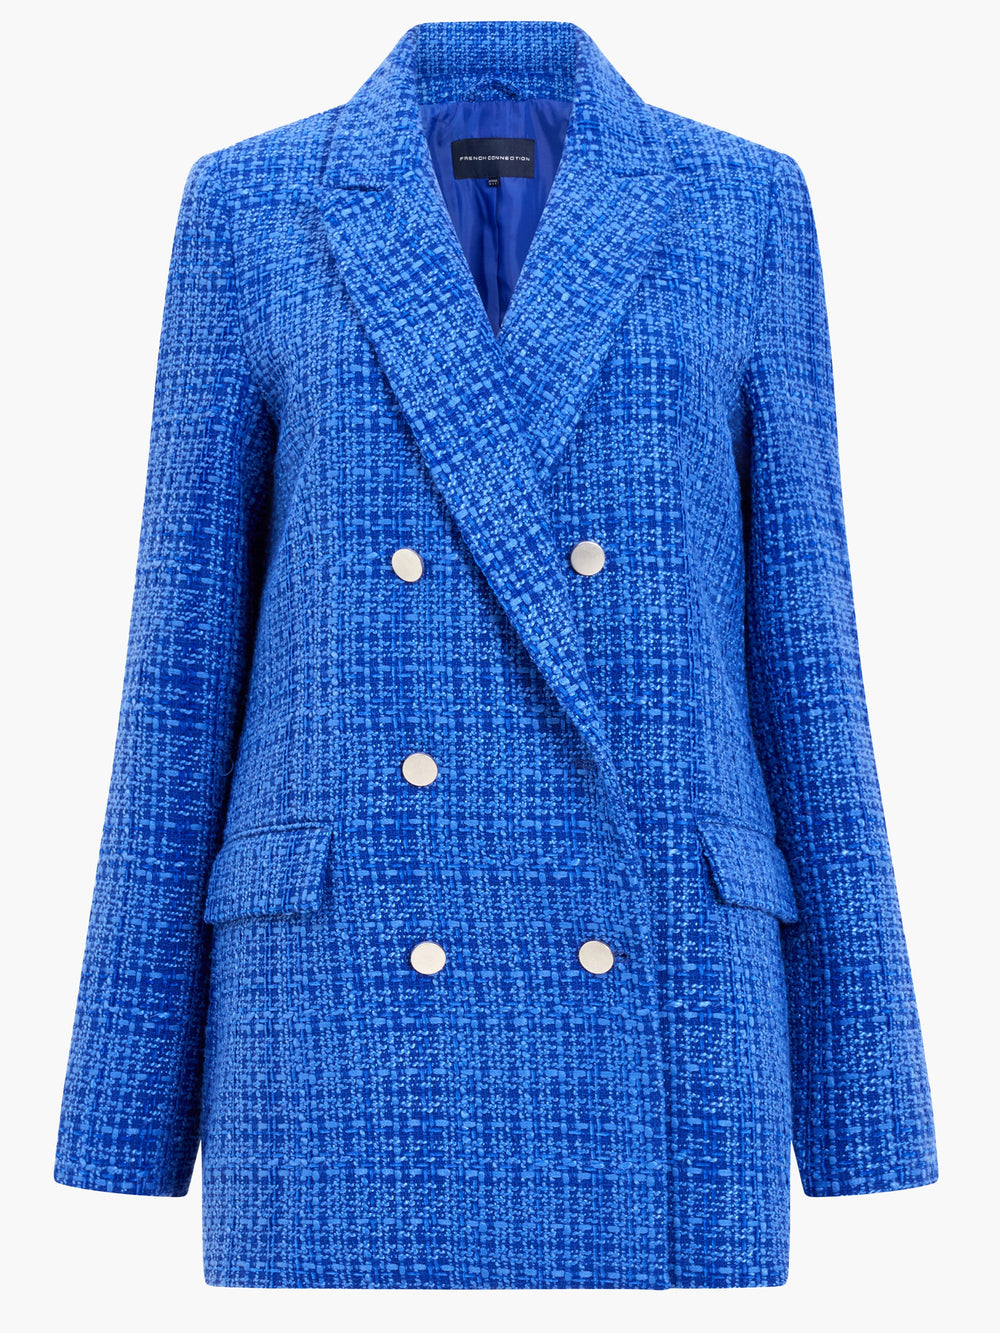 Azzurra Tweed Blazer | French Connection EU